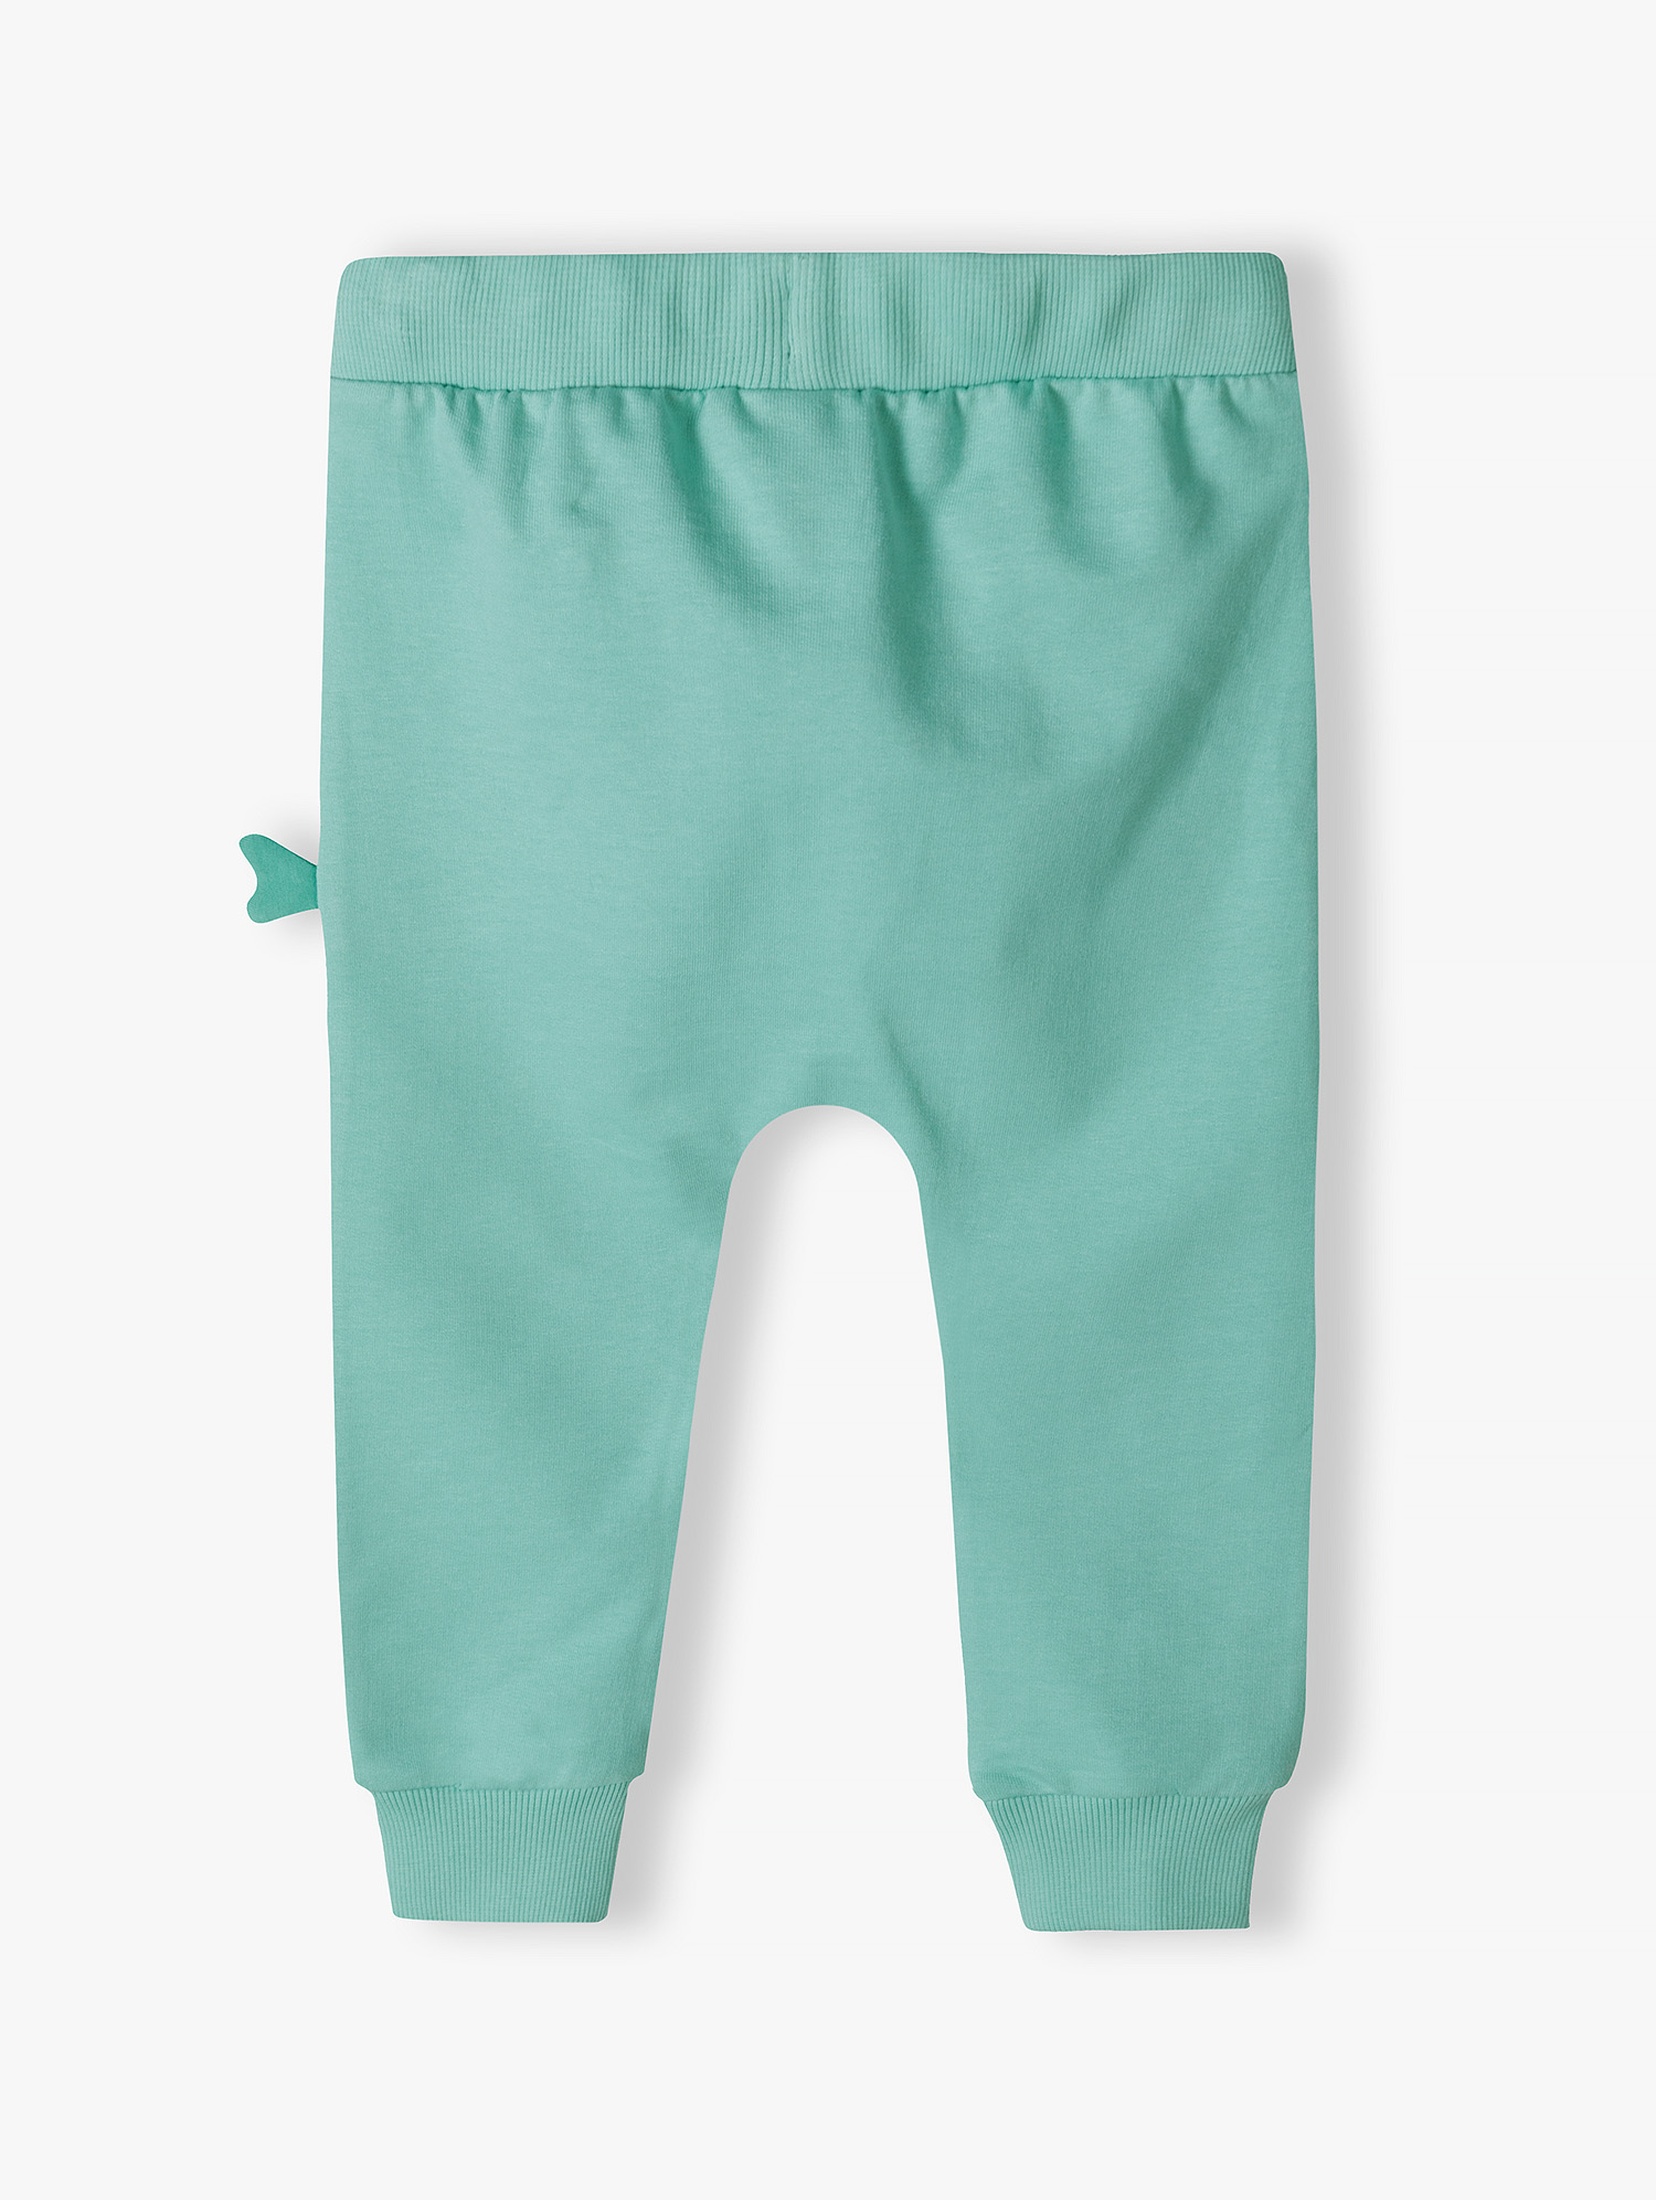 Zielone bawełniane spodnie dresowe niemowlęce